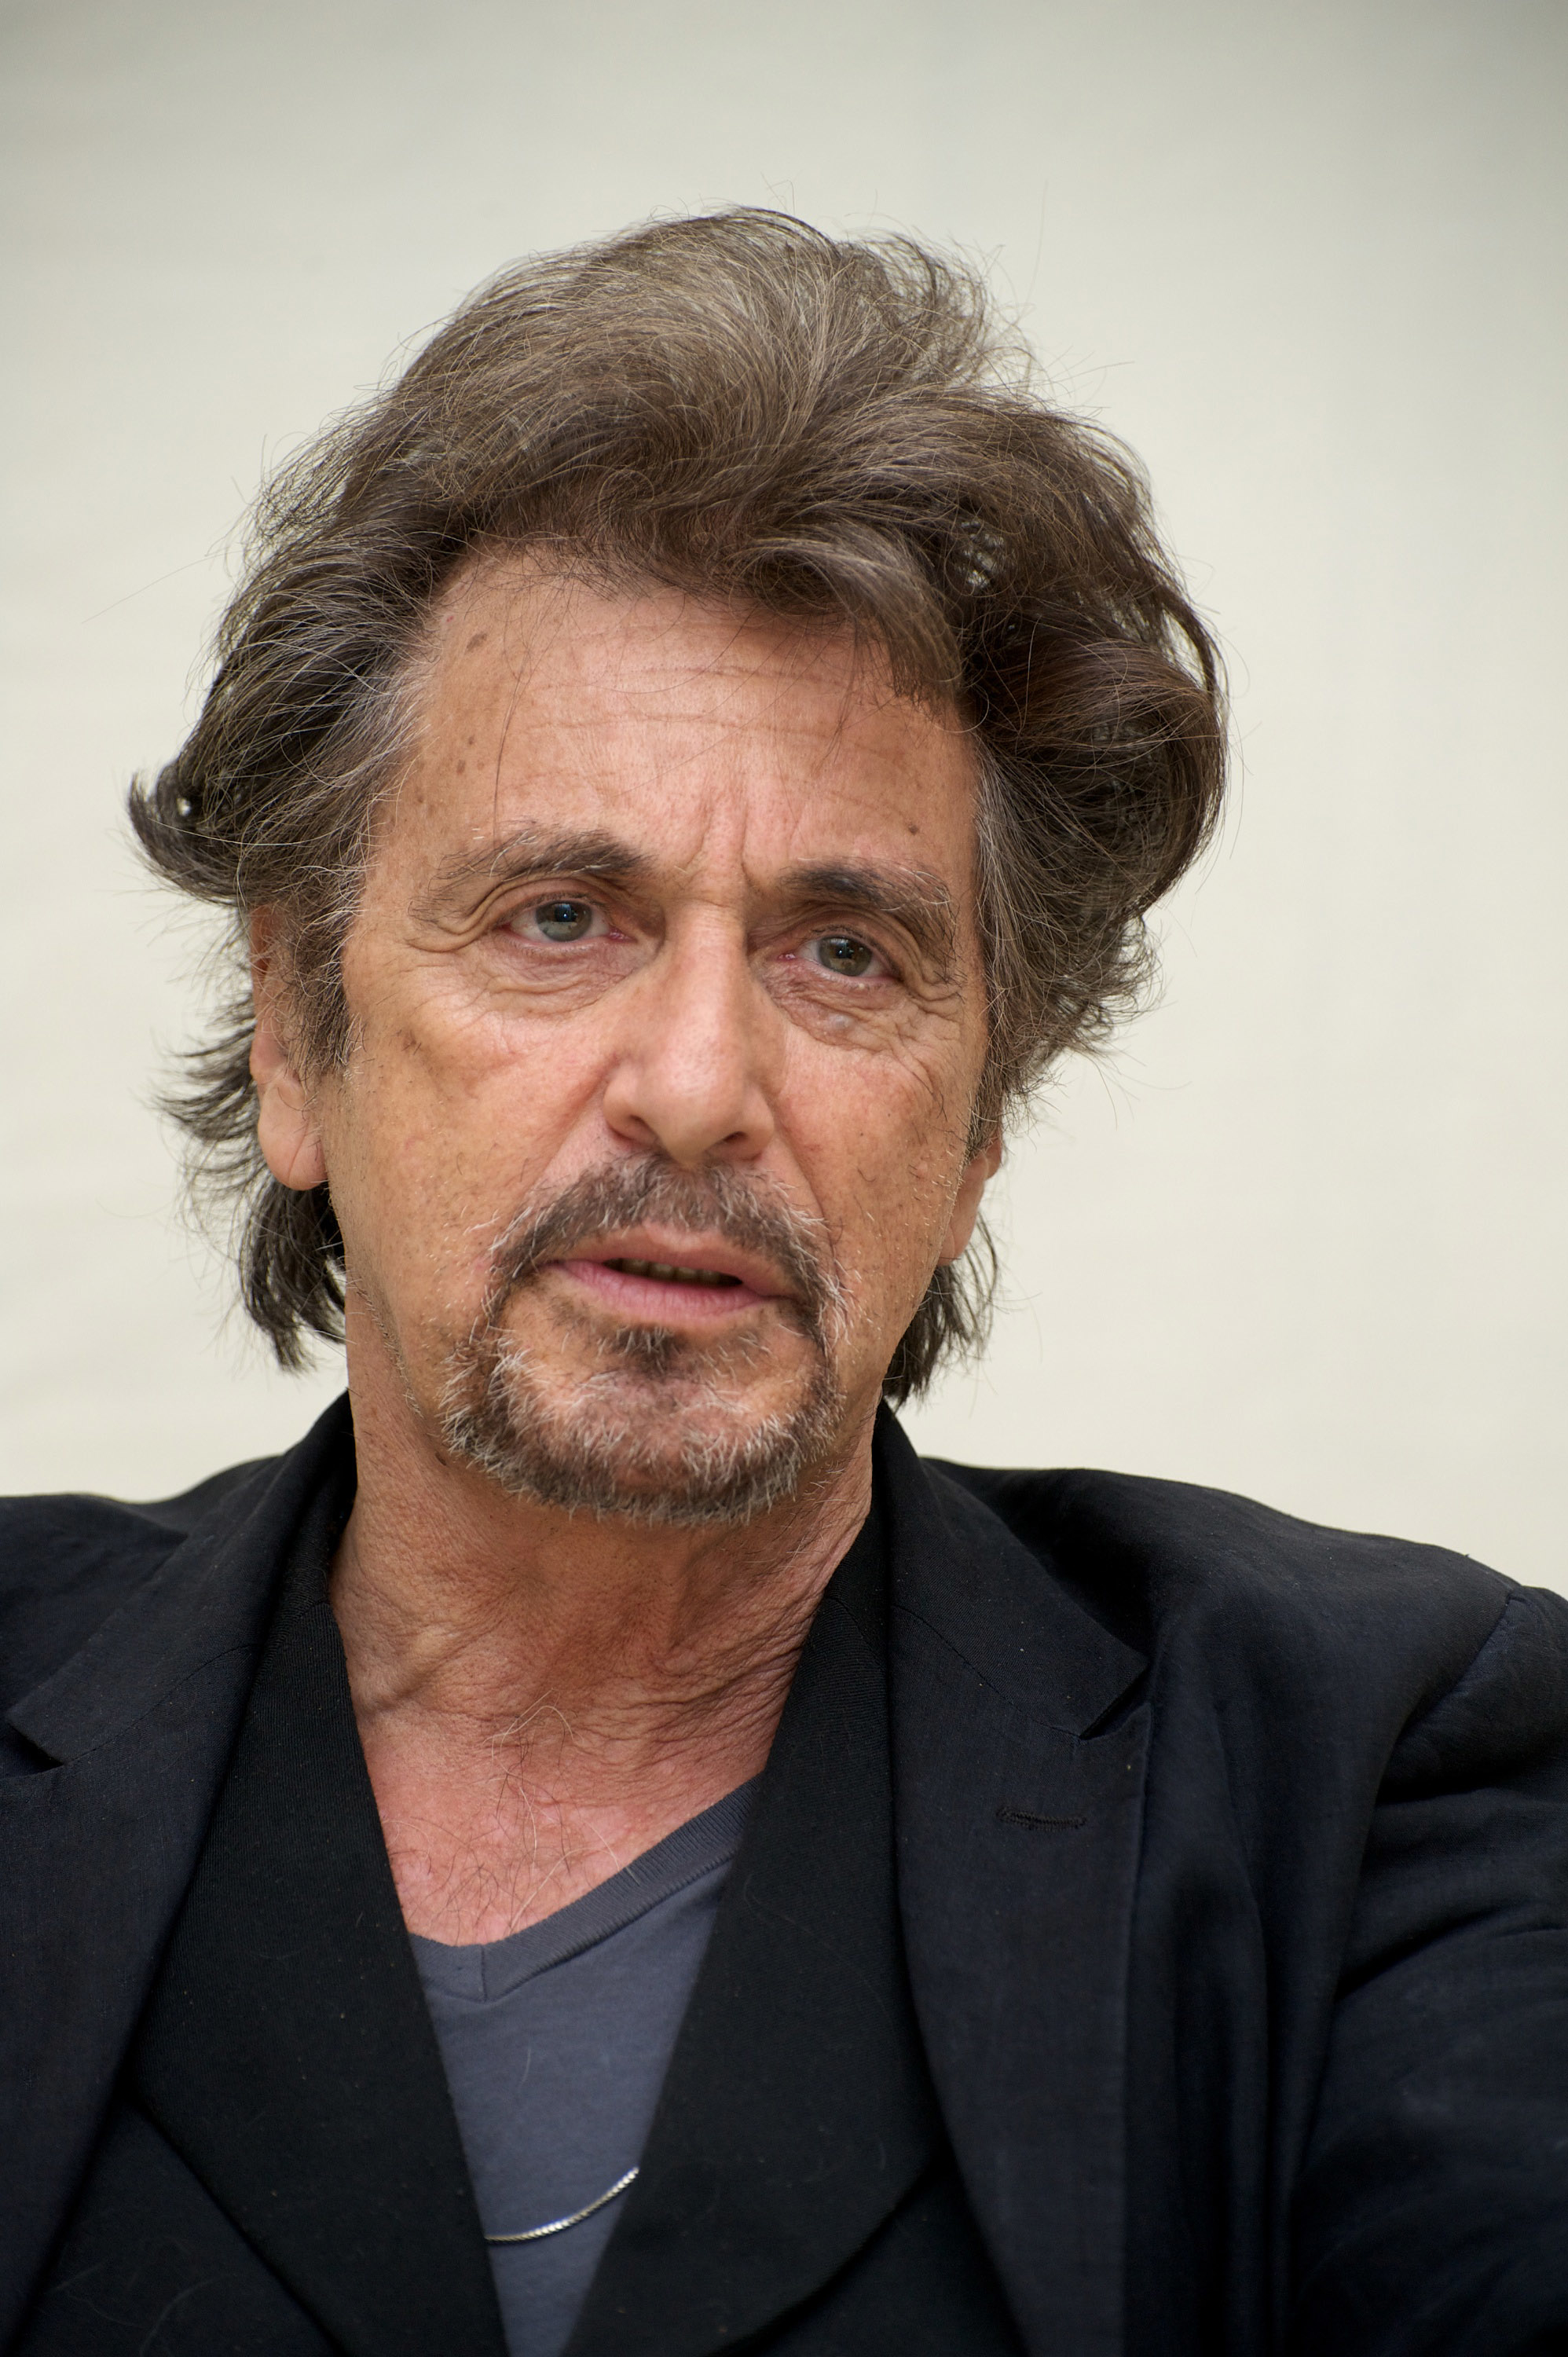 Al Pacino wearing a black suit, looking pensive